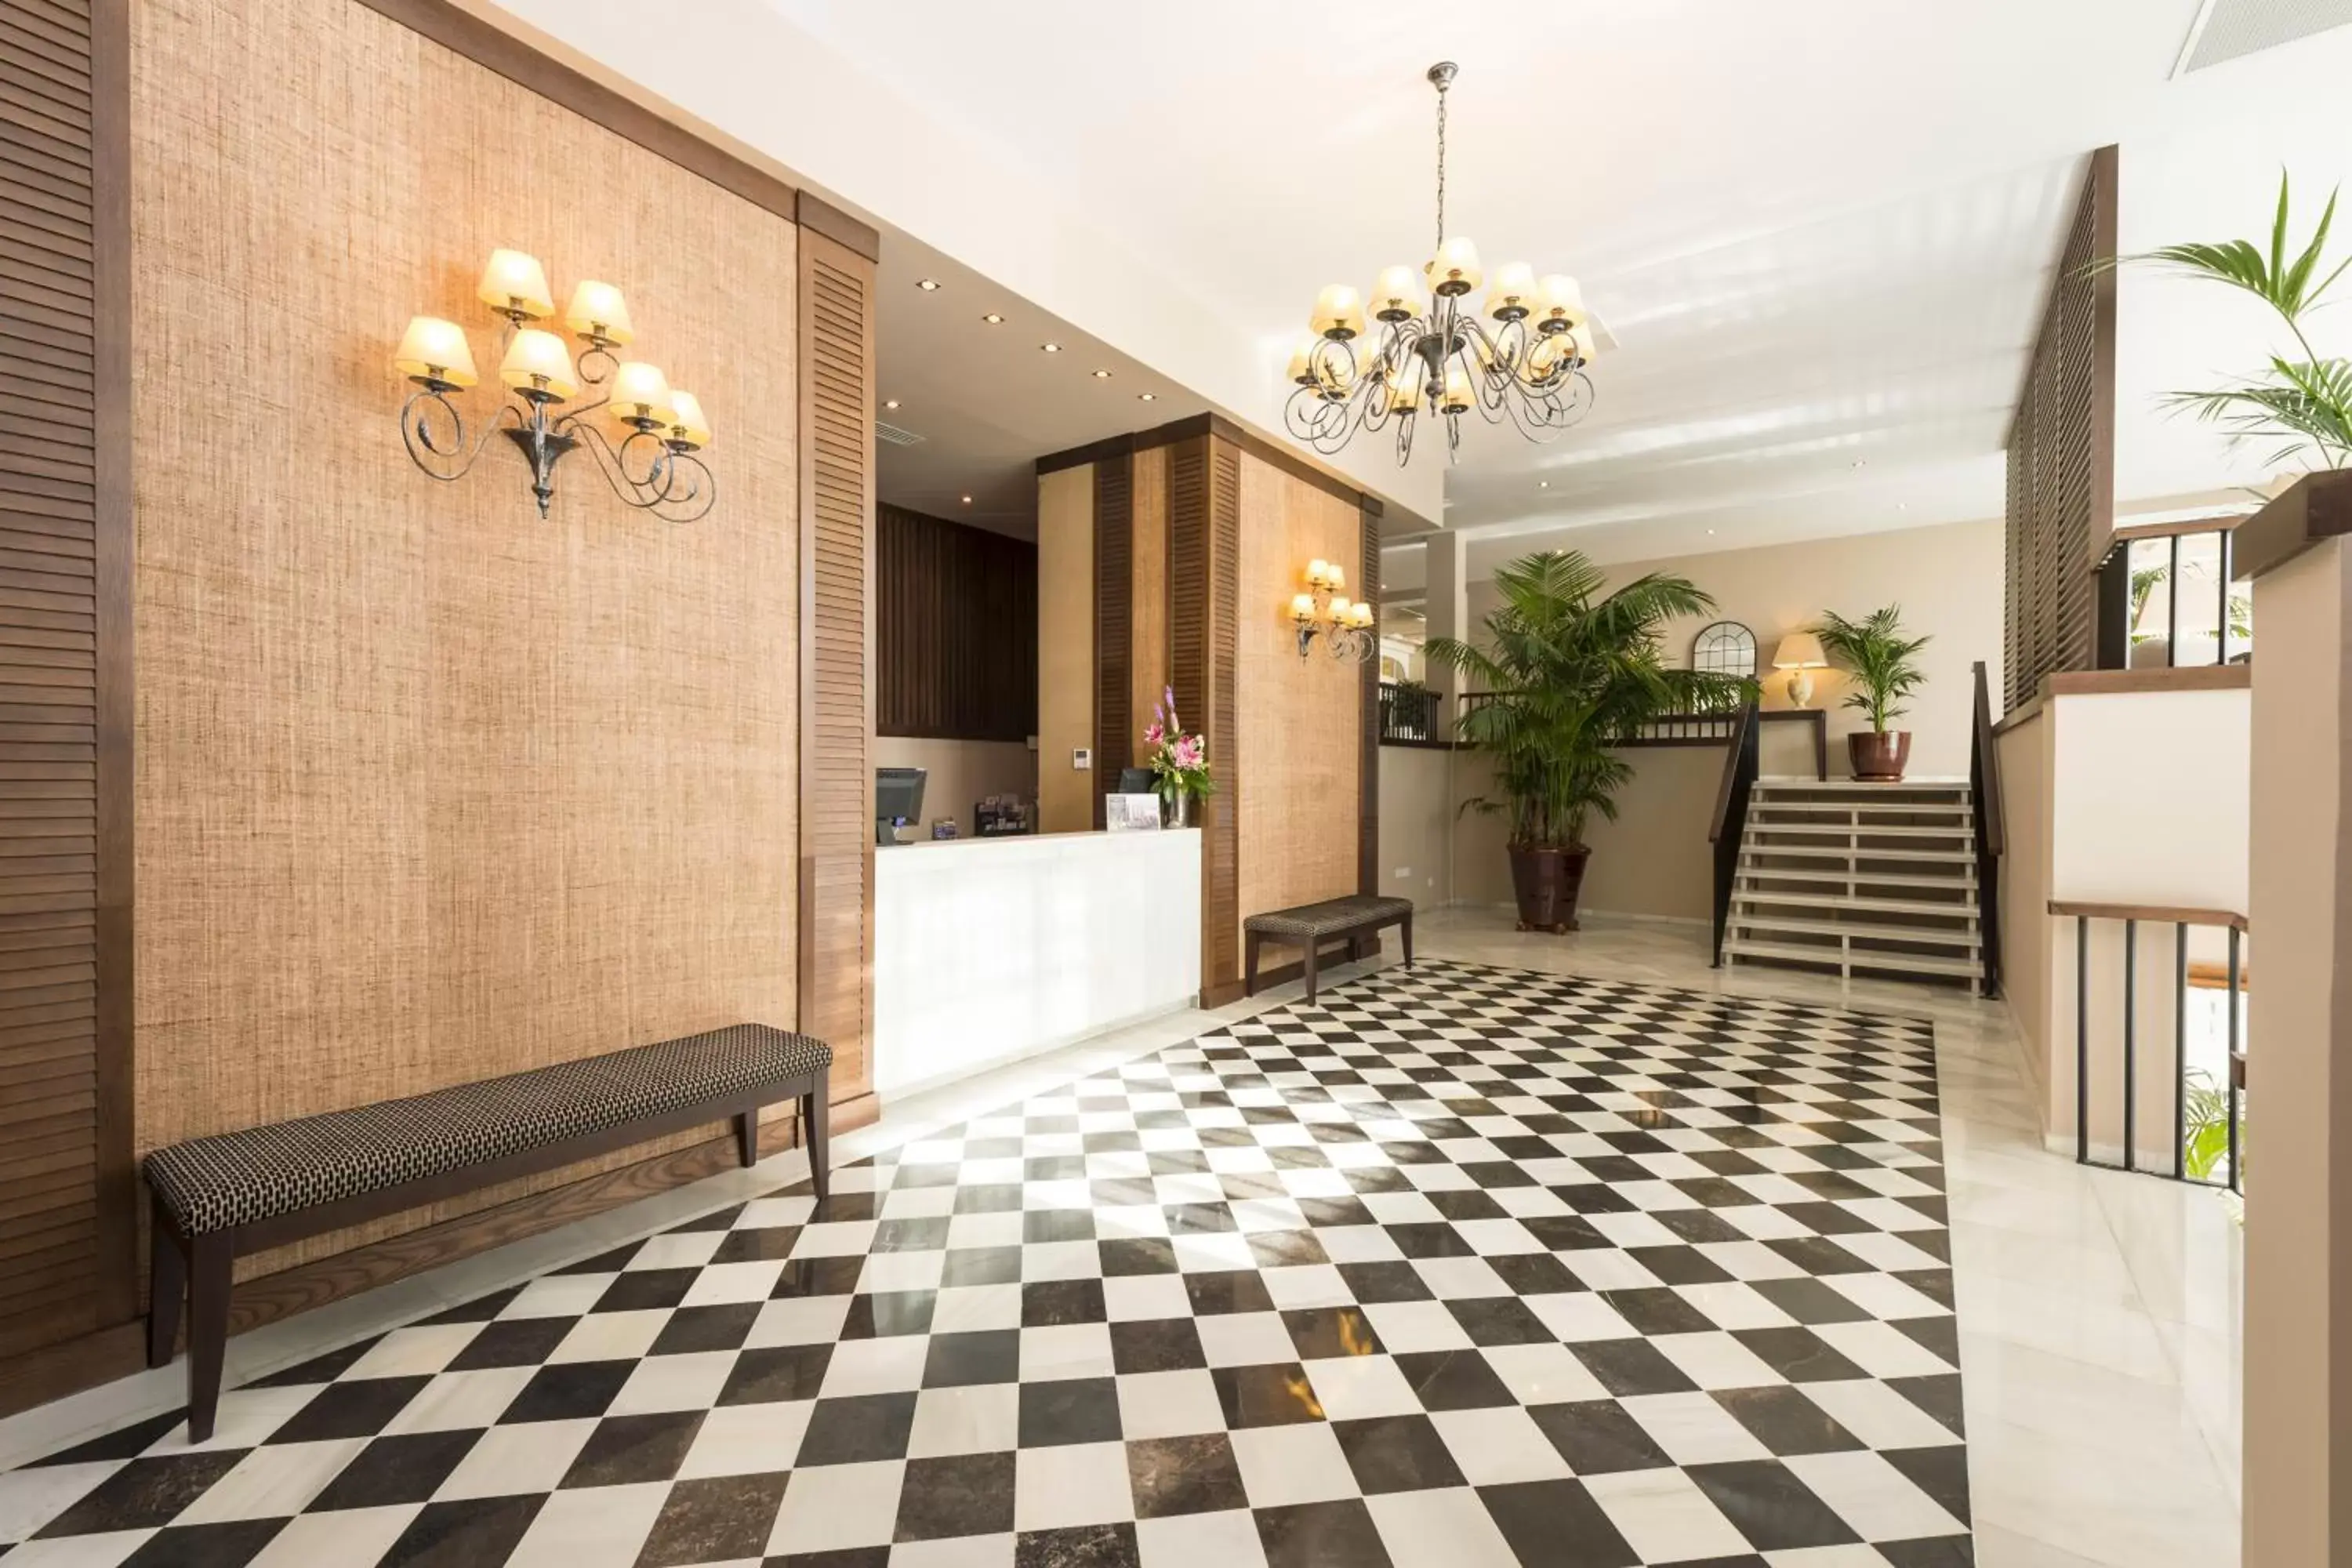 Lobby or reception, Lobby/Reception in Rock Hotel